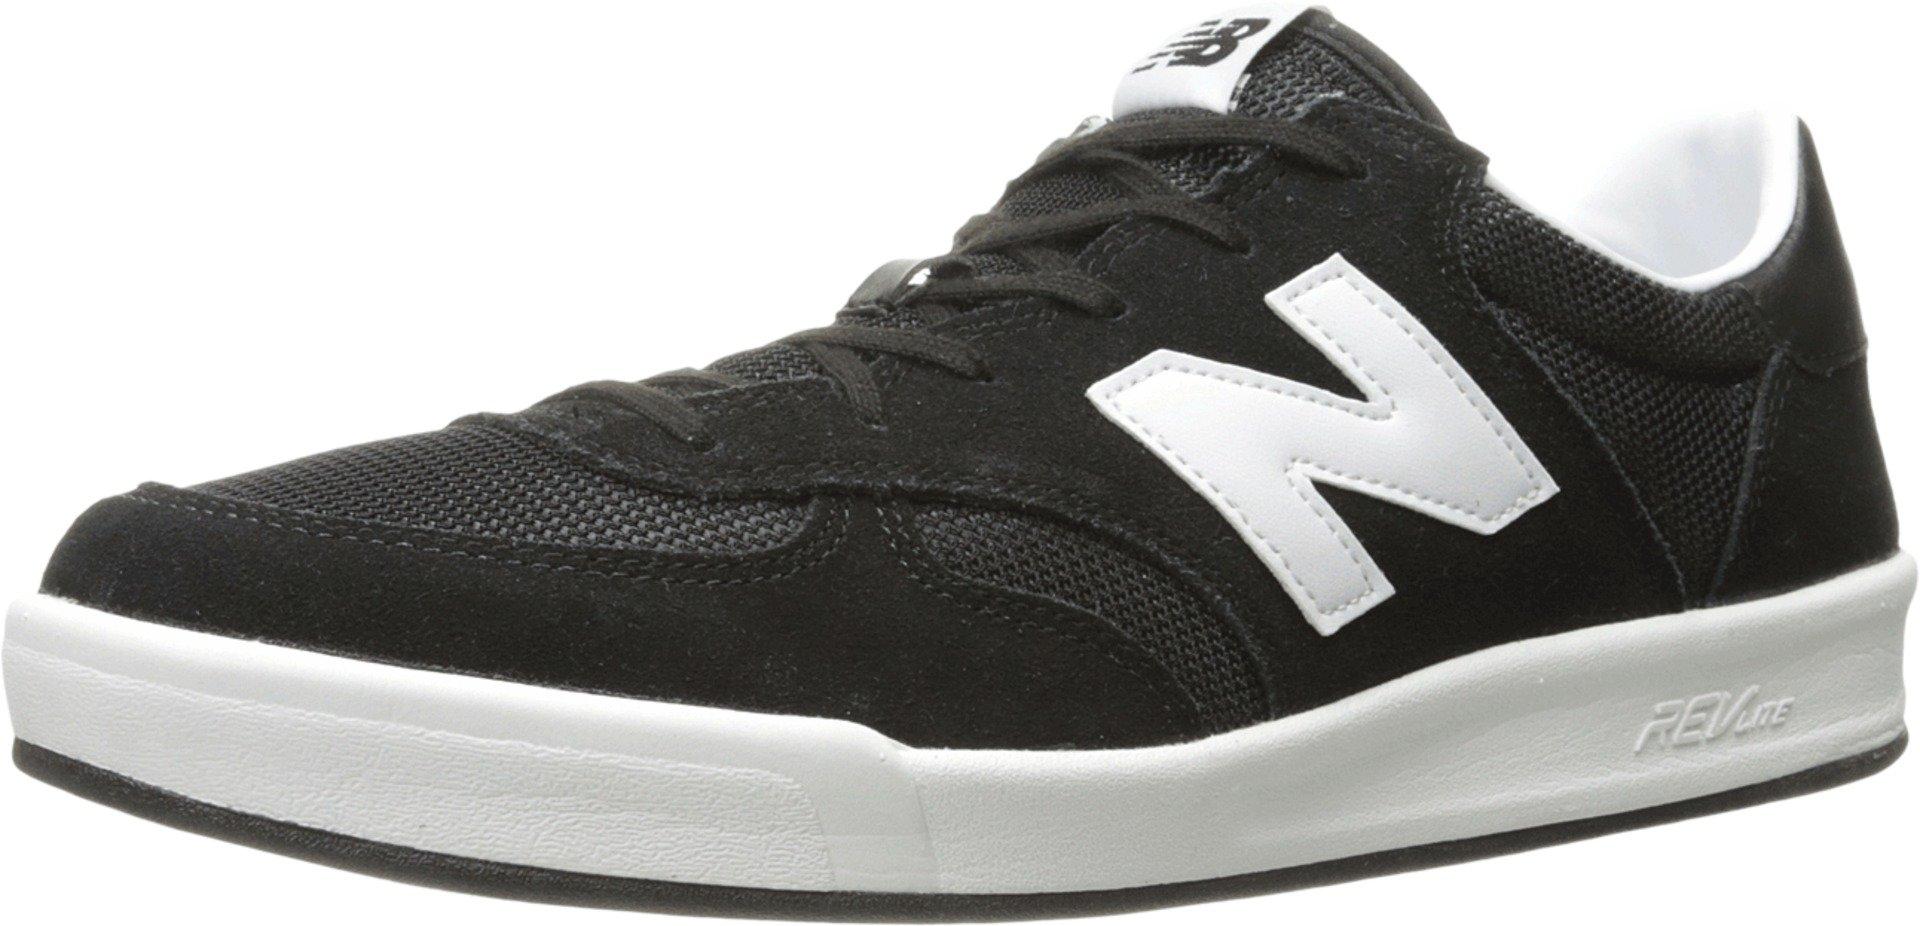 New Balance Leather 300 V1 Court Sneaker in Black/White (Black) for Men -  Lyst